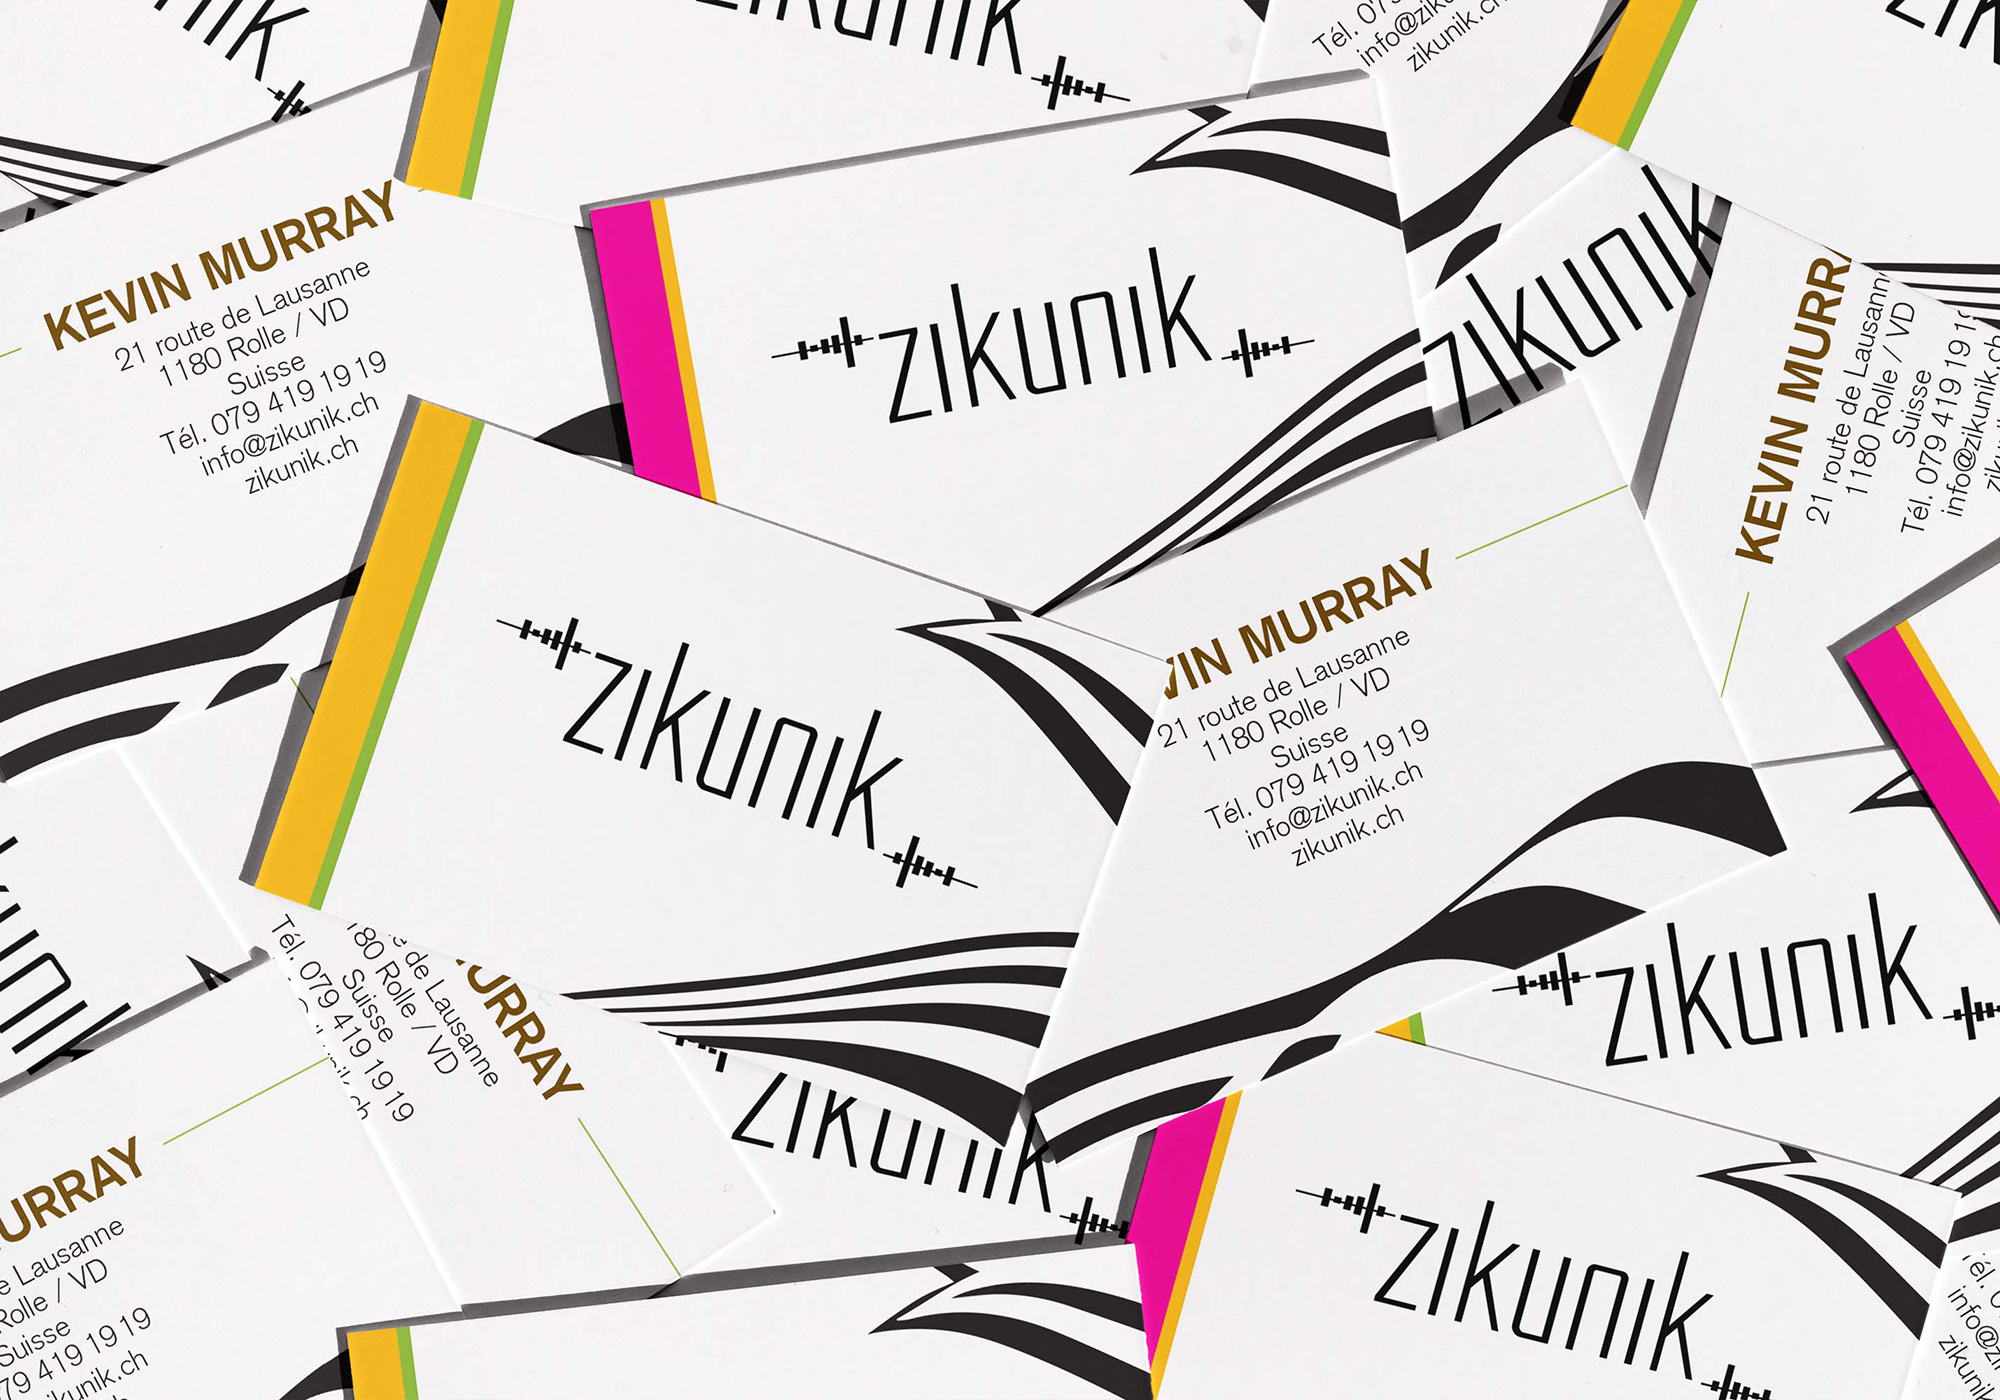 Zikunik_cartes de visite